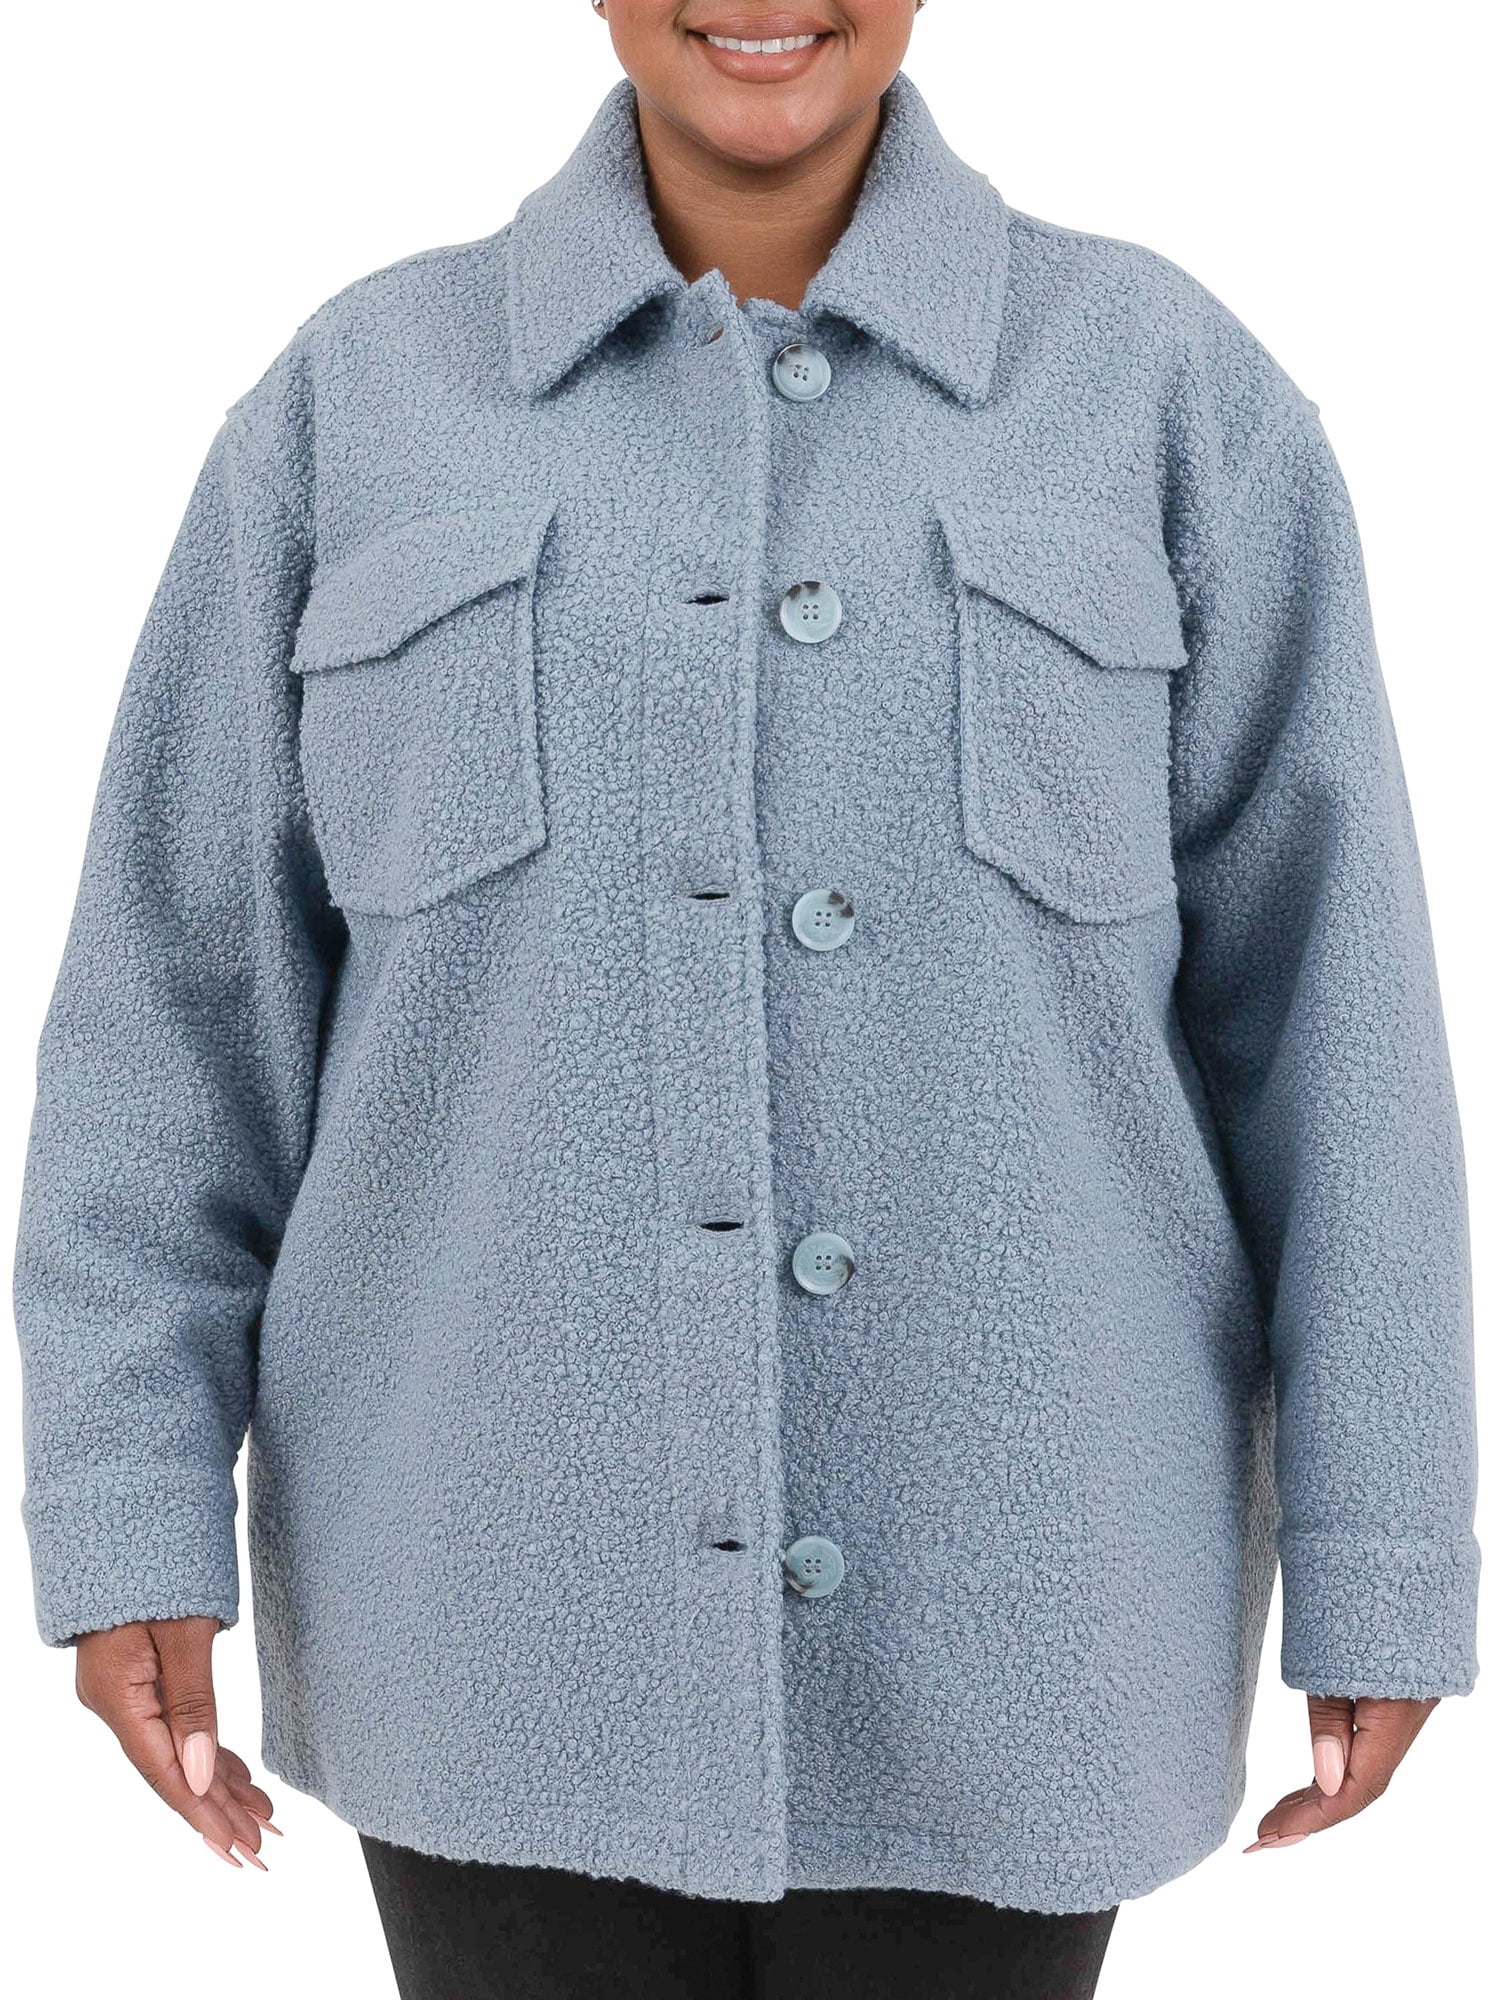 Goddessvan Women Lace Blazer Tops Long Sleeve Jacket Ladies Office Wear Cardigan Coat